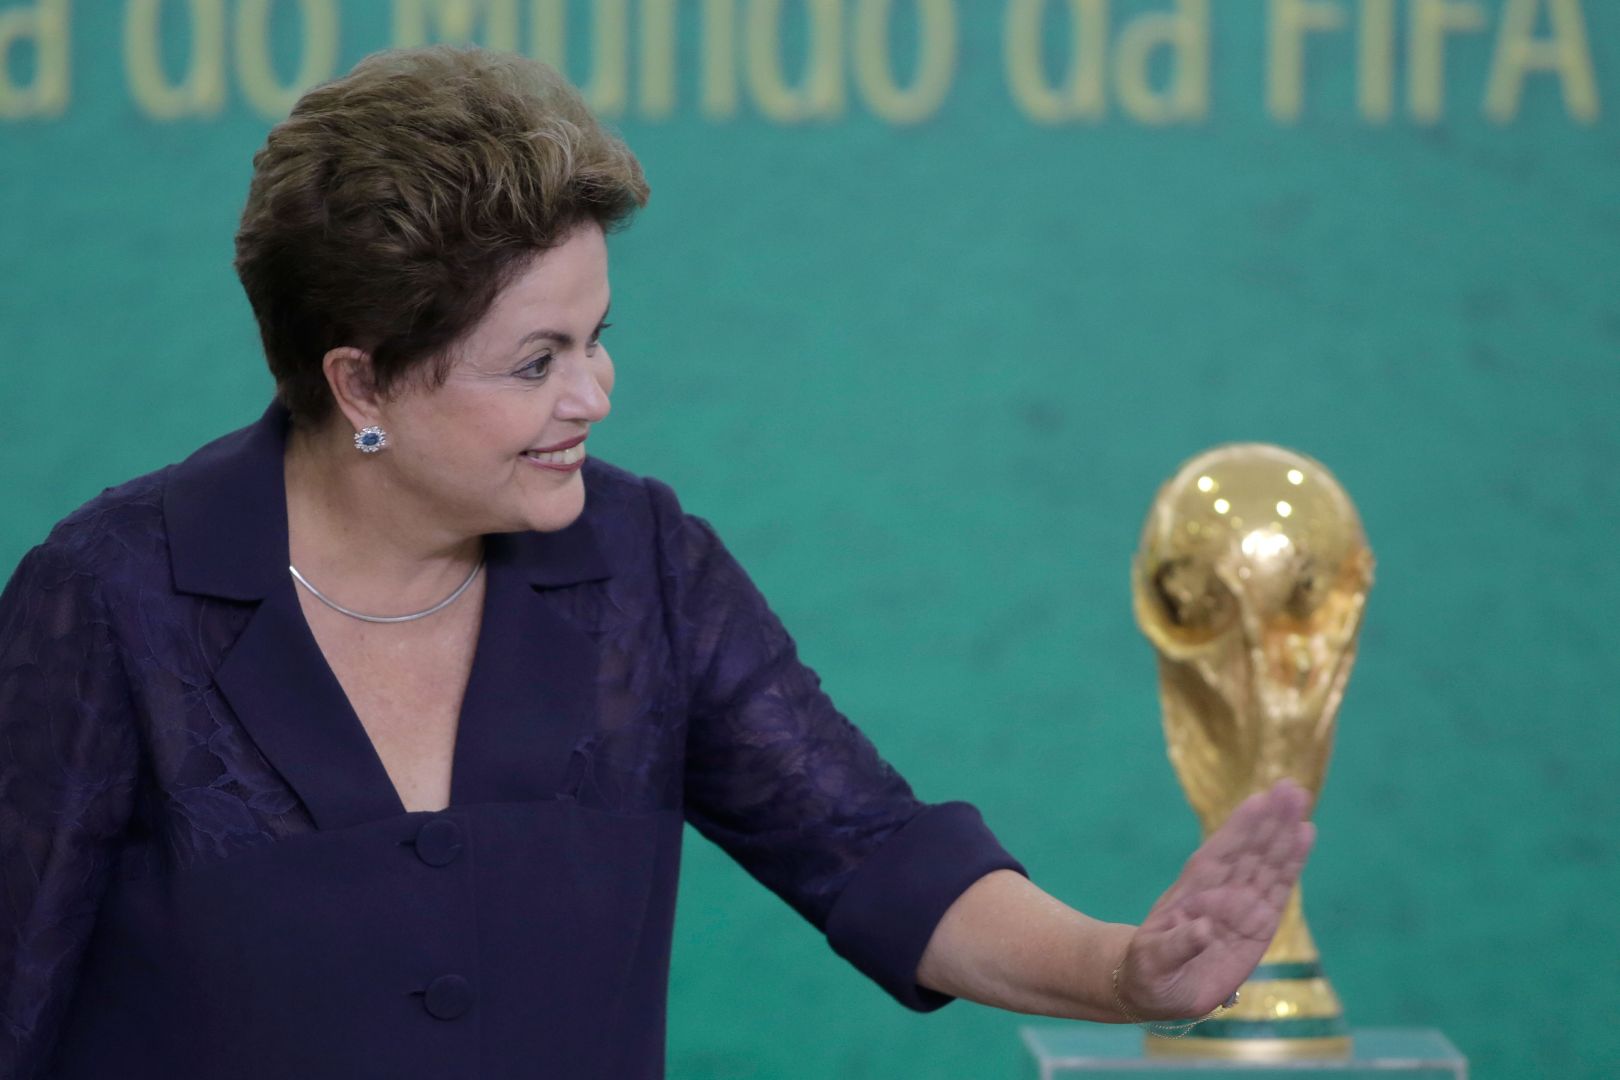 رئيسة البرازيل تلغي رحلتها إلى أثينا لإيقاد شعلة أوليمبياد 2016